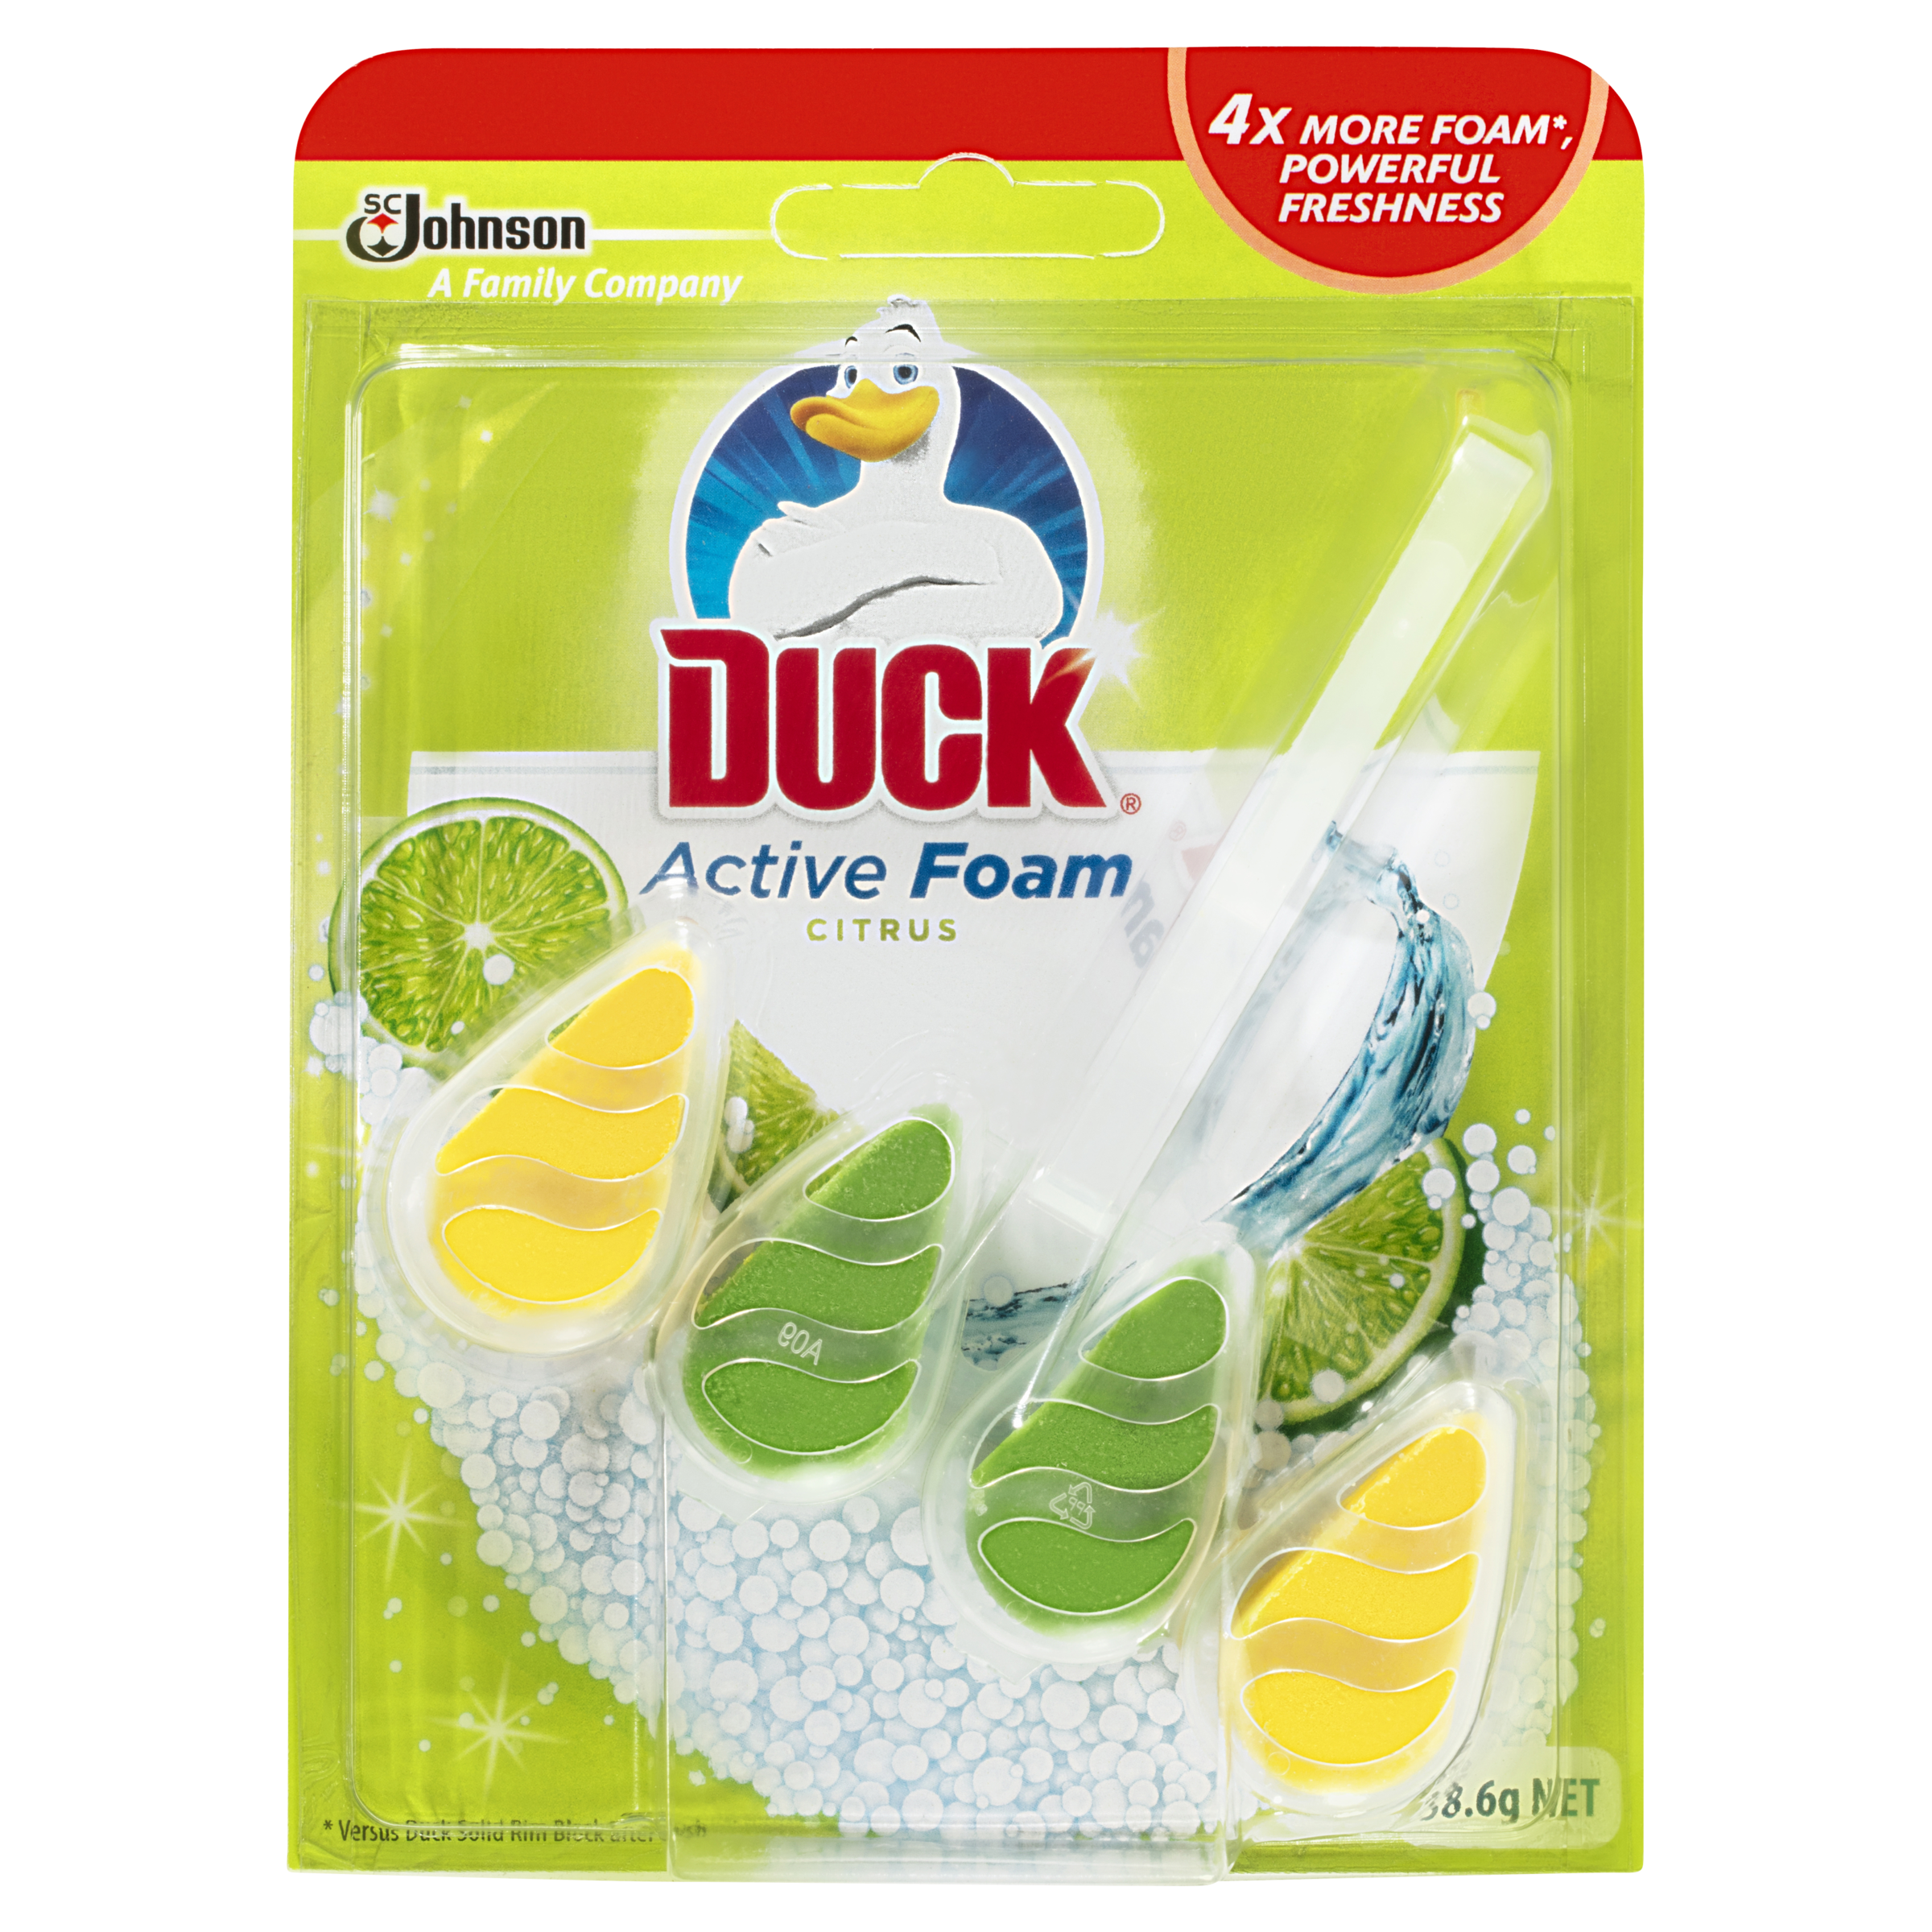 Duck® Active Foam Citrus